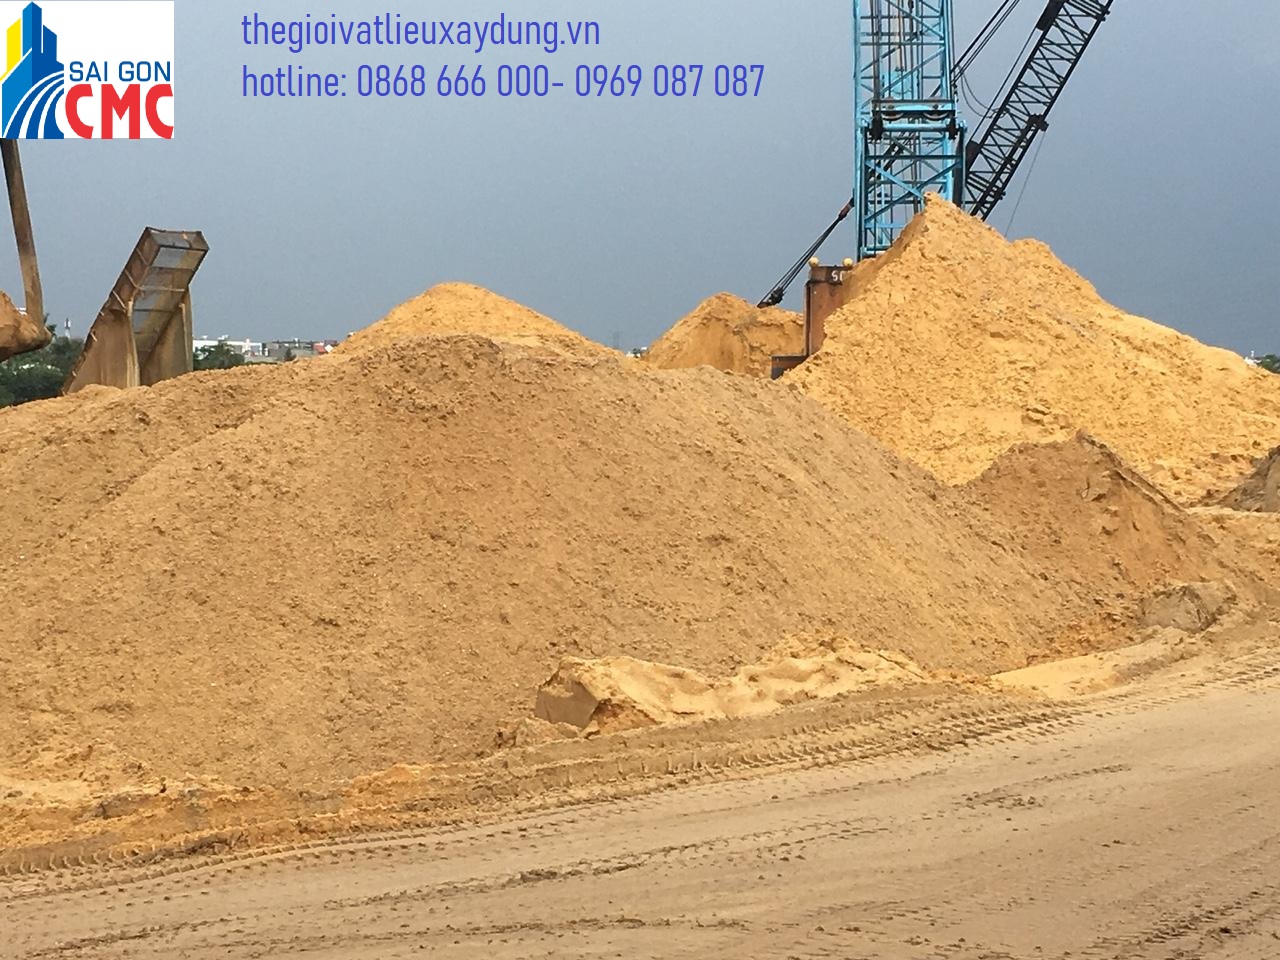 Sài Gòn CMC tự hào là đơn vị cung cấp bảng giá cát xây dựng lớn nhất tại TPHCM